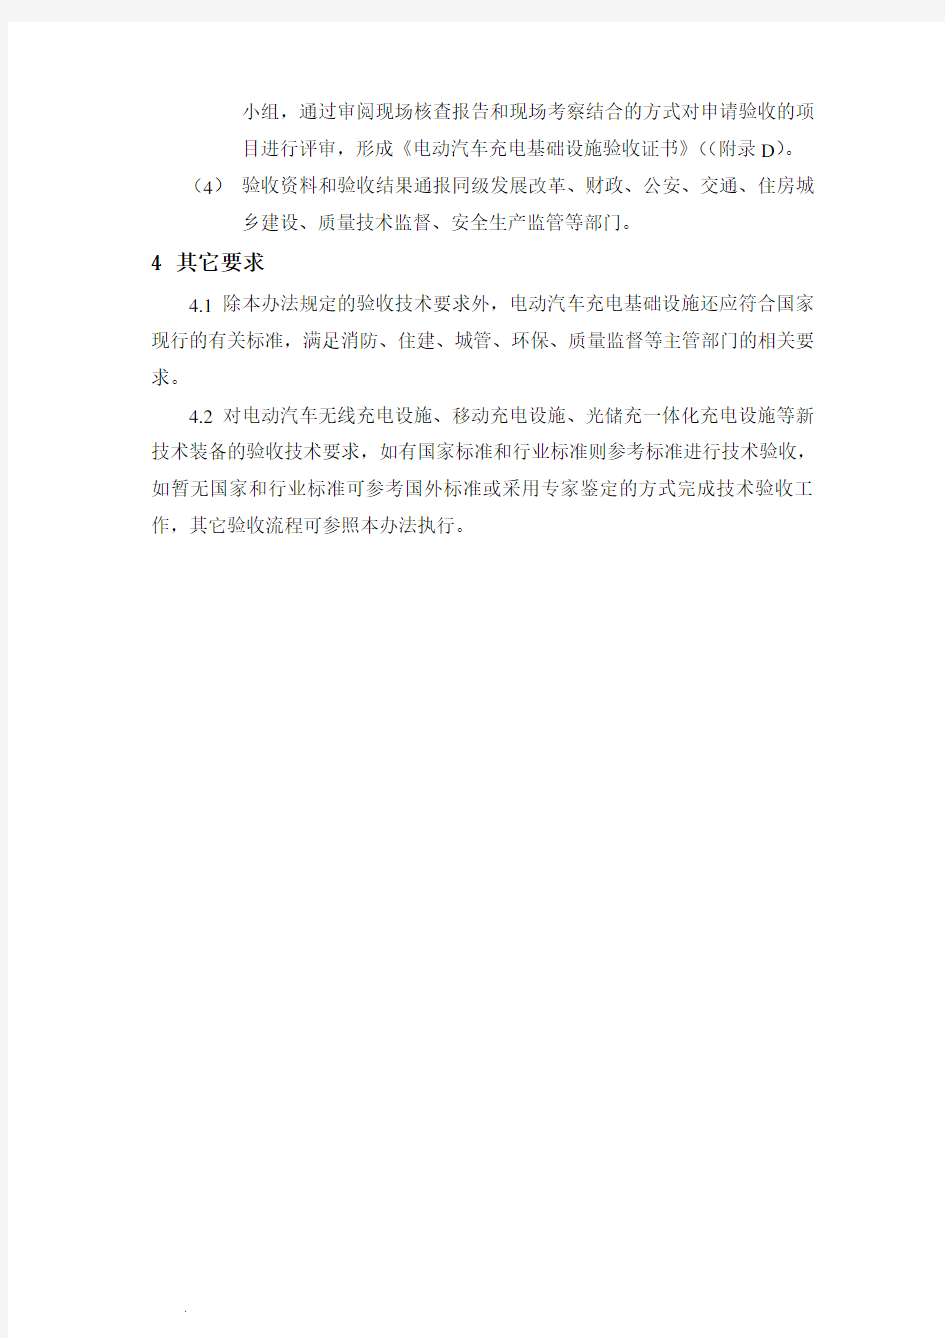 最新最新广东省电动汽车充电基础设施验收办法(试行)(修订版)